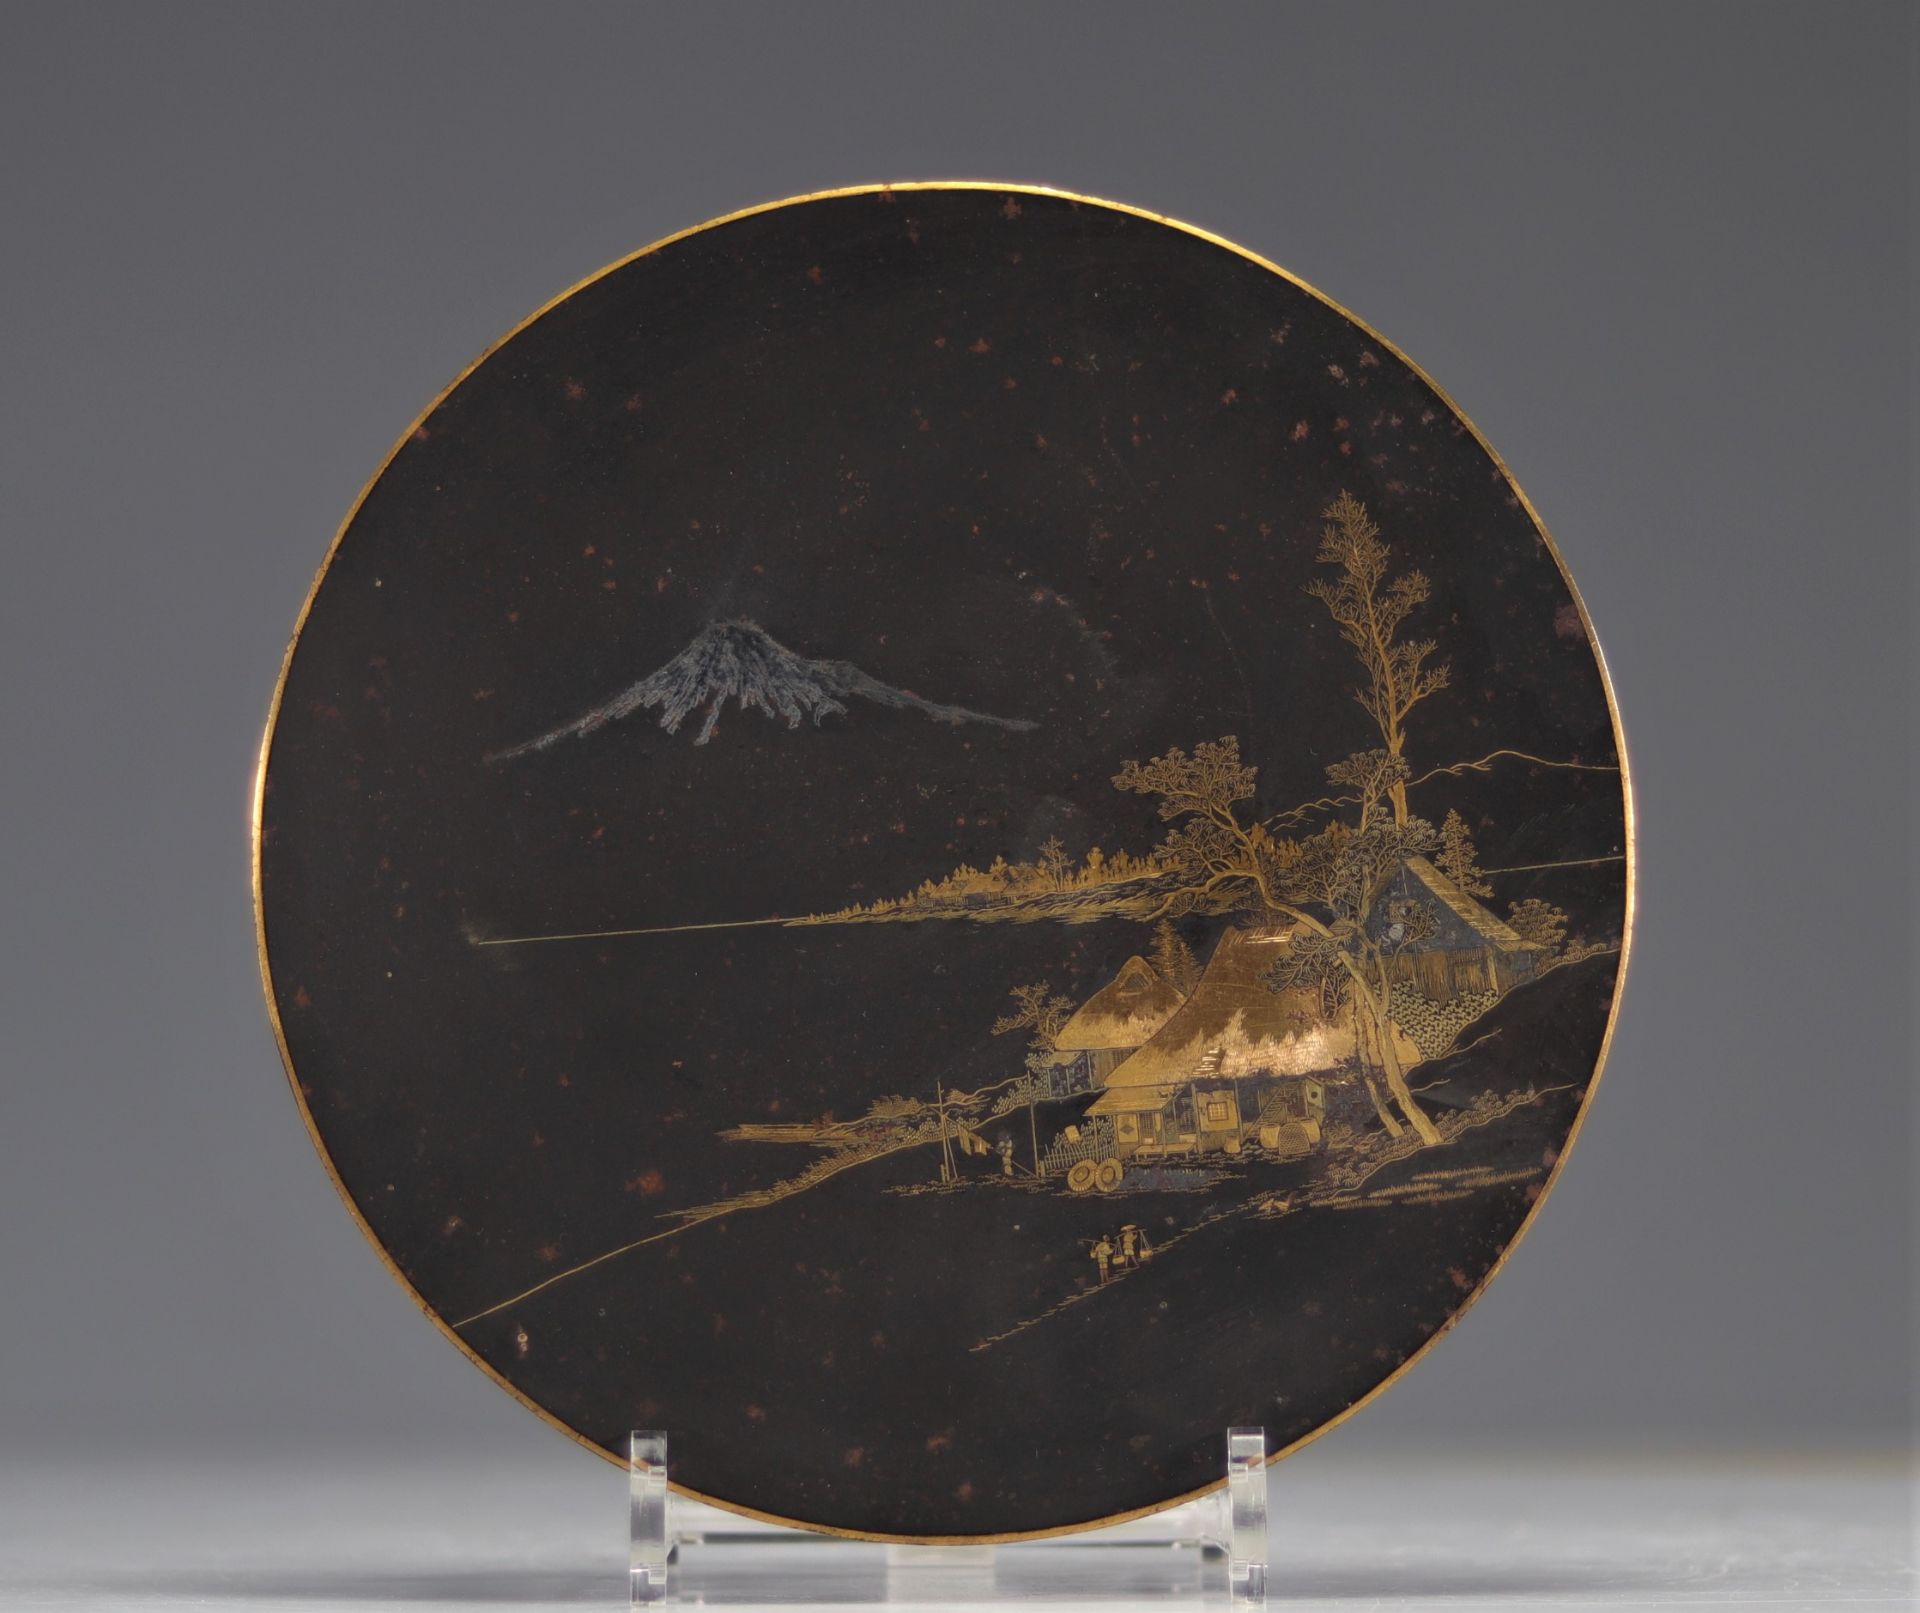 Beautiful Komai dish - dragonfly signature - Japan Meji period